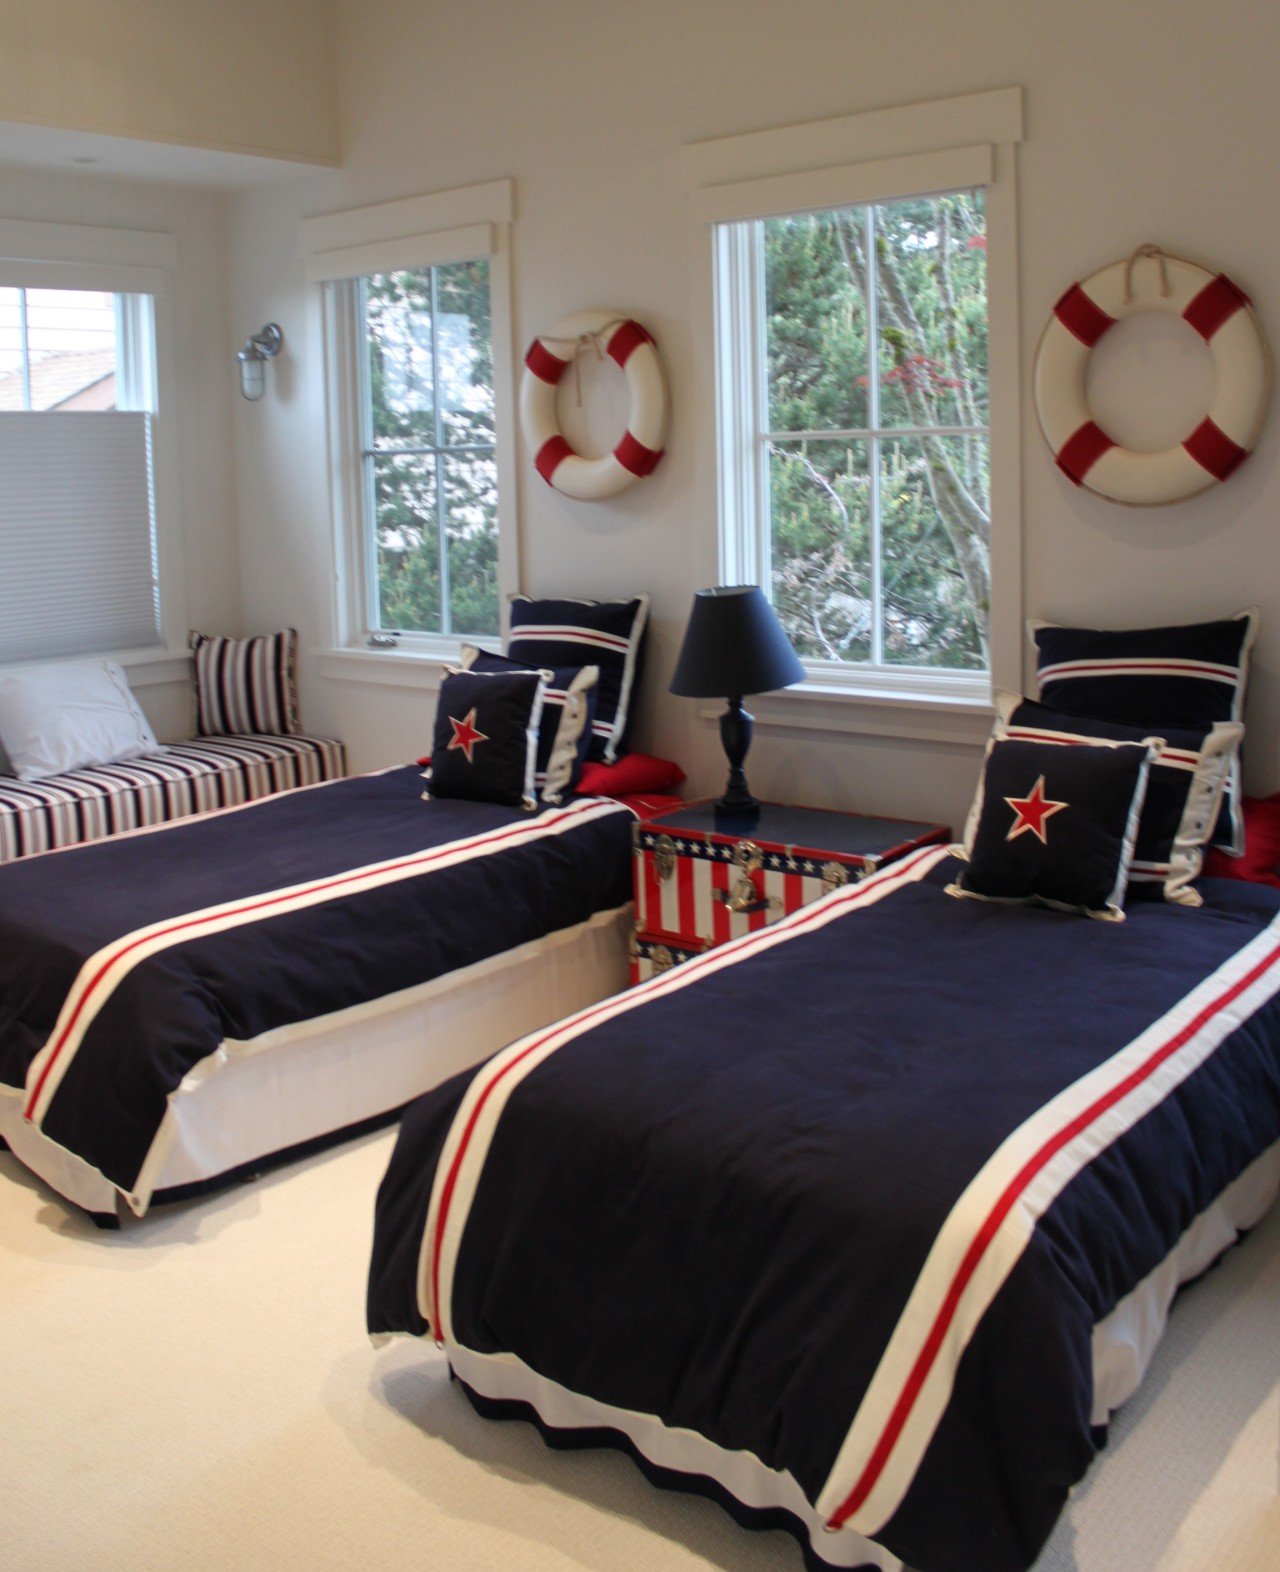 Спальня с двумя кроватями для подростков